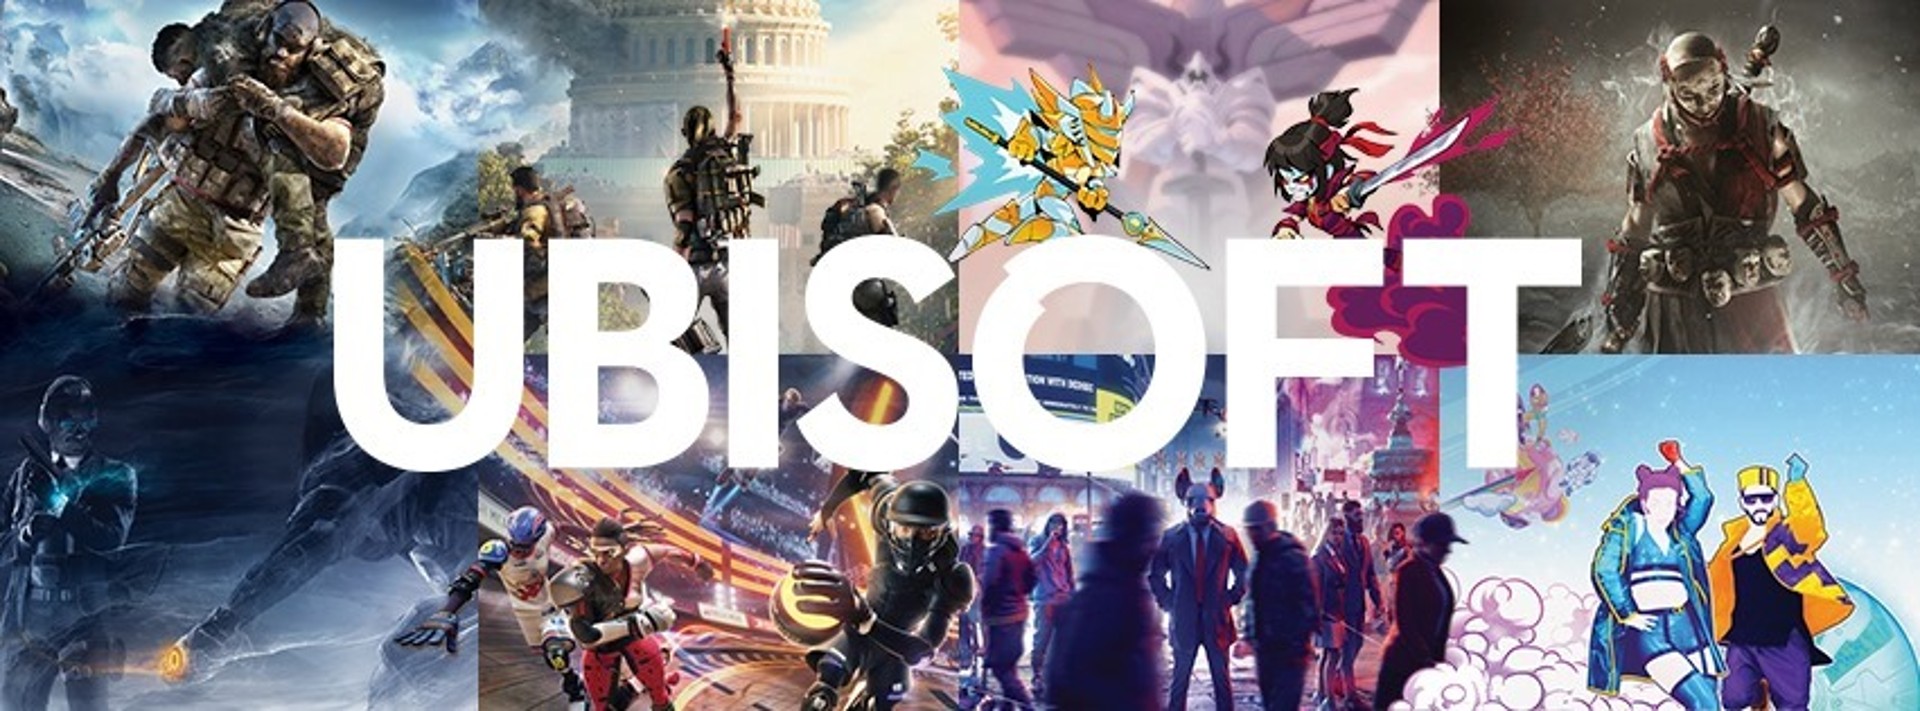 Ubisoft ประกาศยกเลิกพร้อมกัน 3 เกมและ Skull and Bones เลื่อนวางจำหน่ายอีกครั้ง